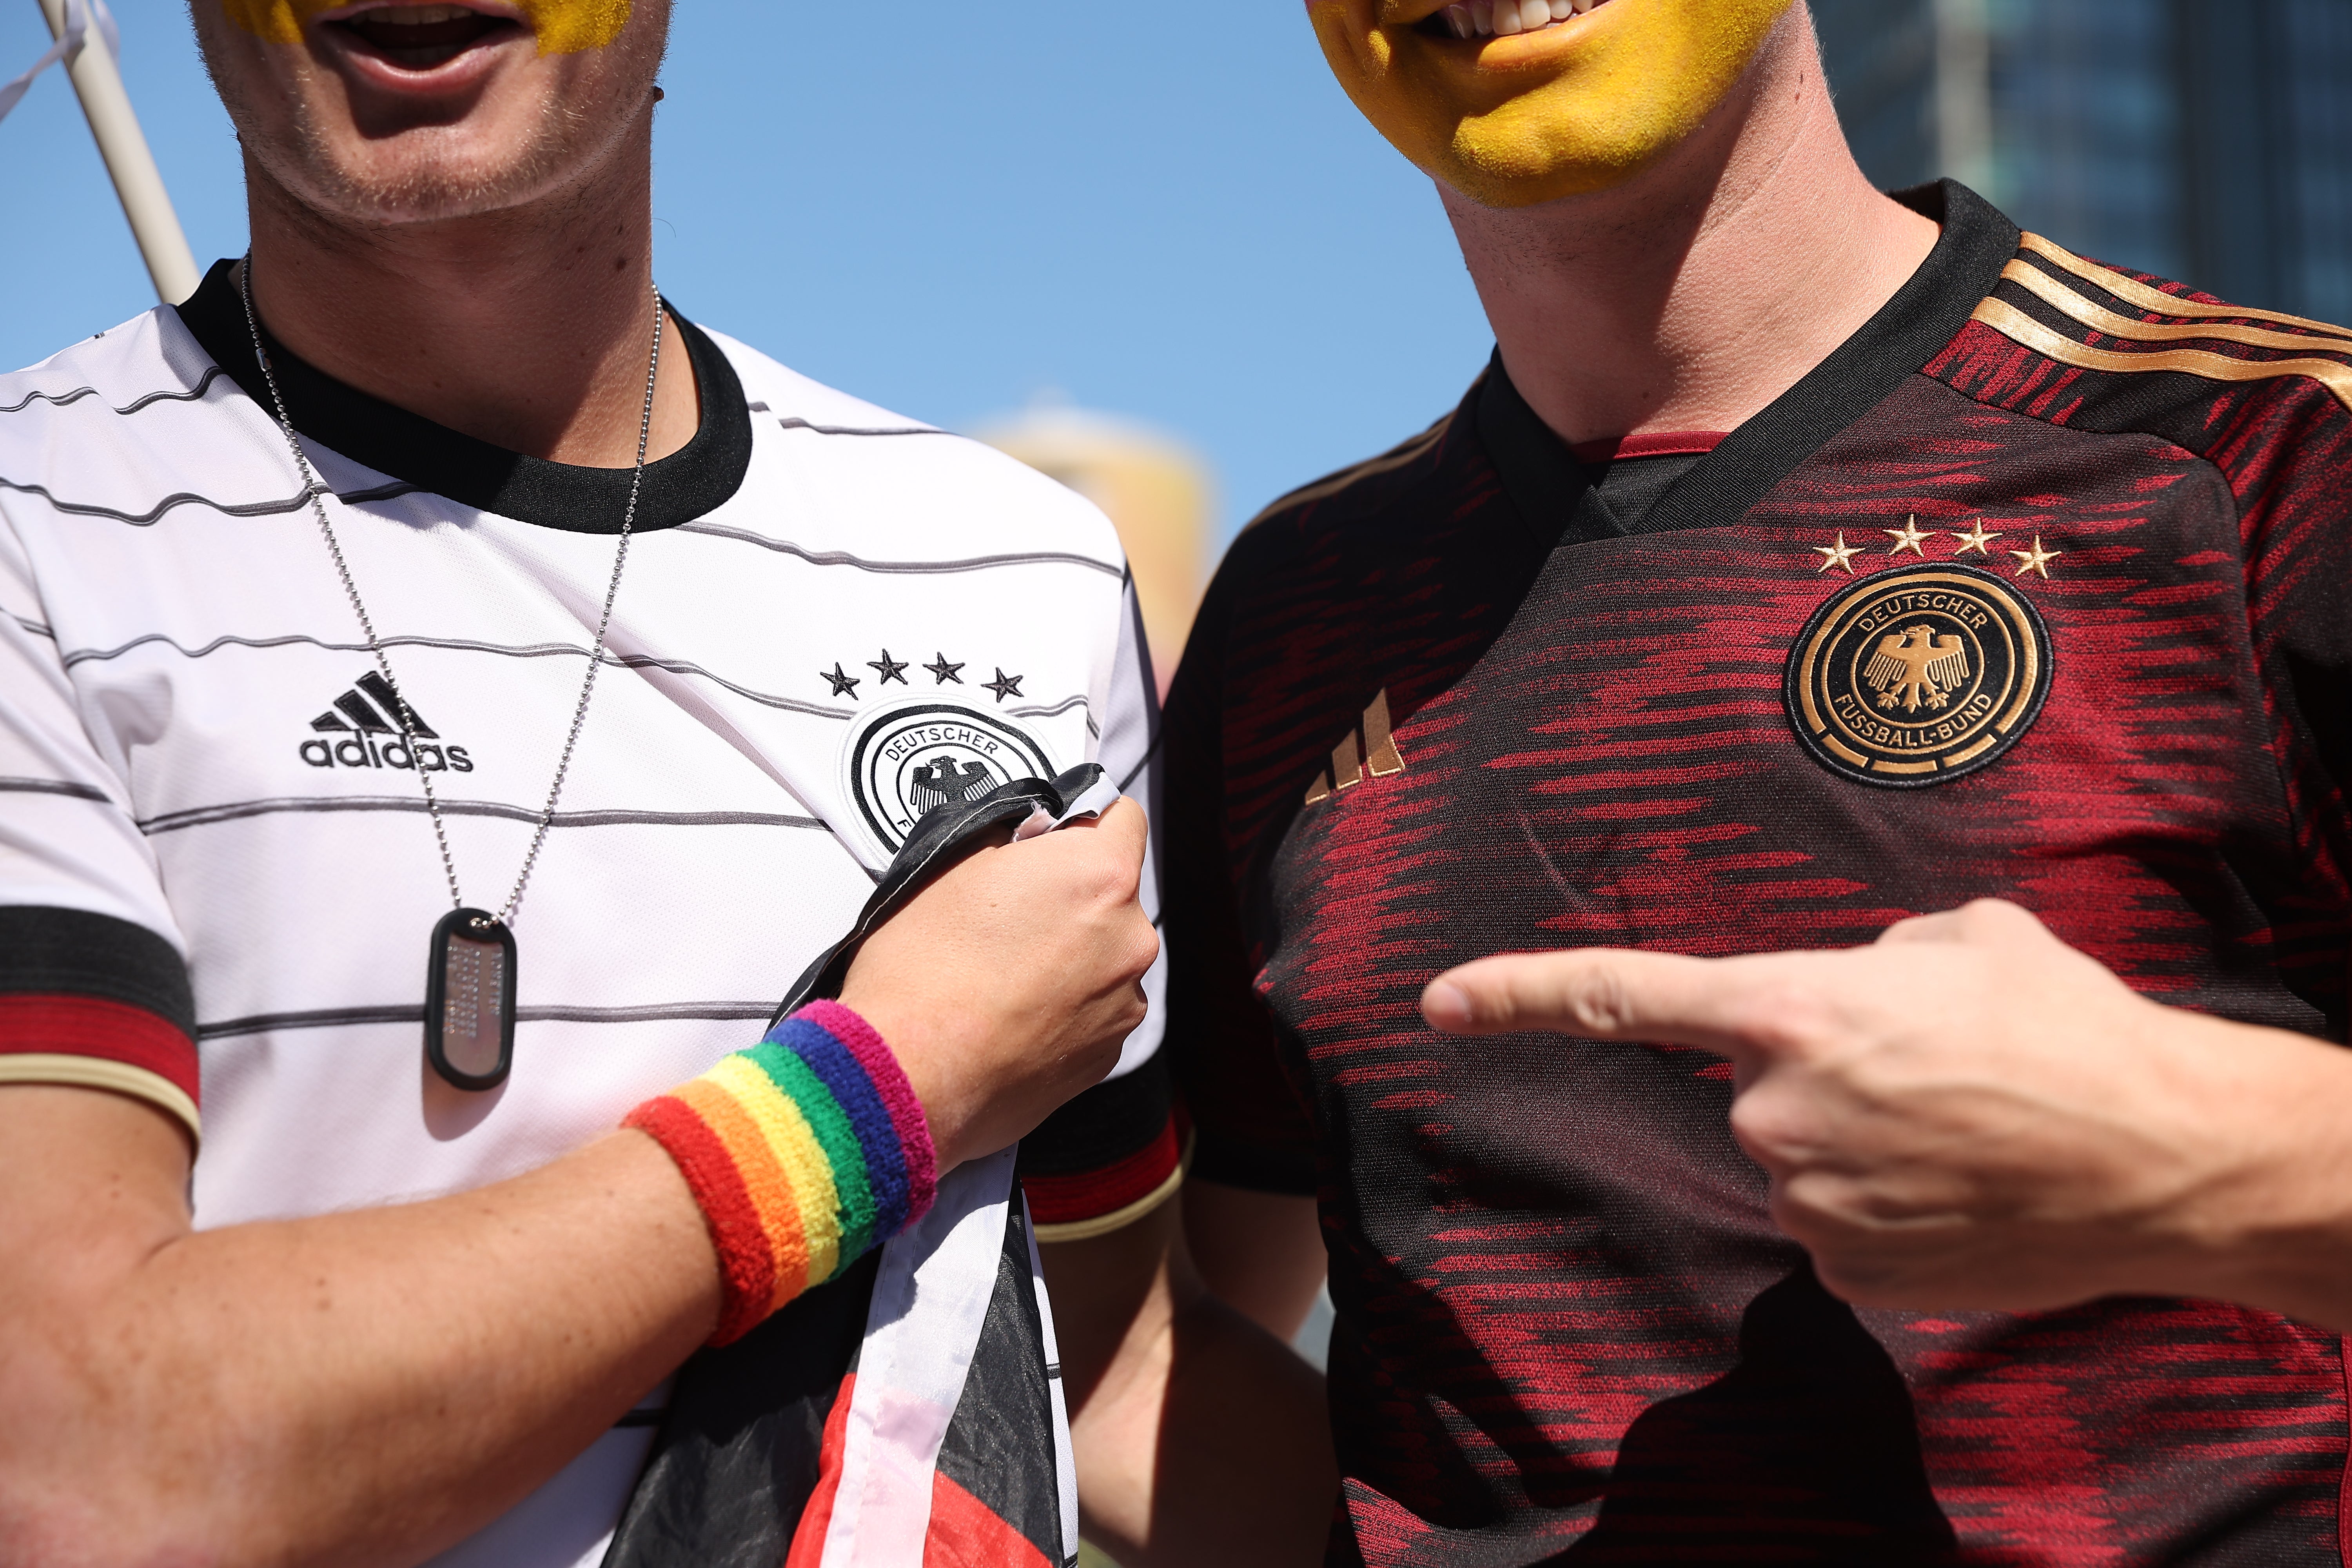 Germany fans wear a rainbow wristband in Qatar